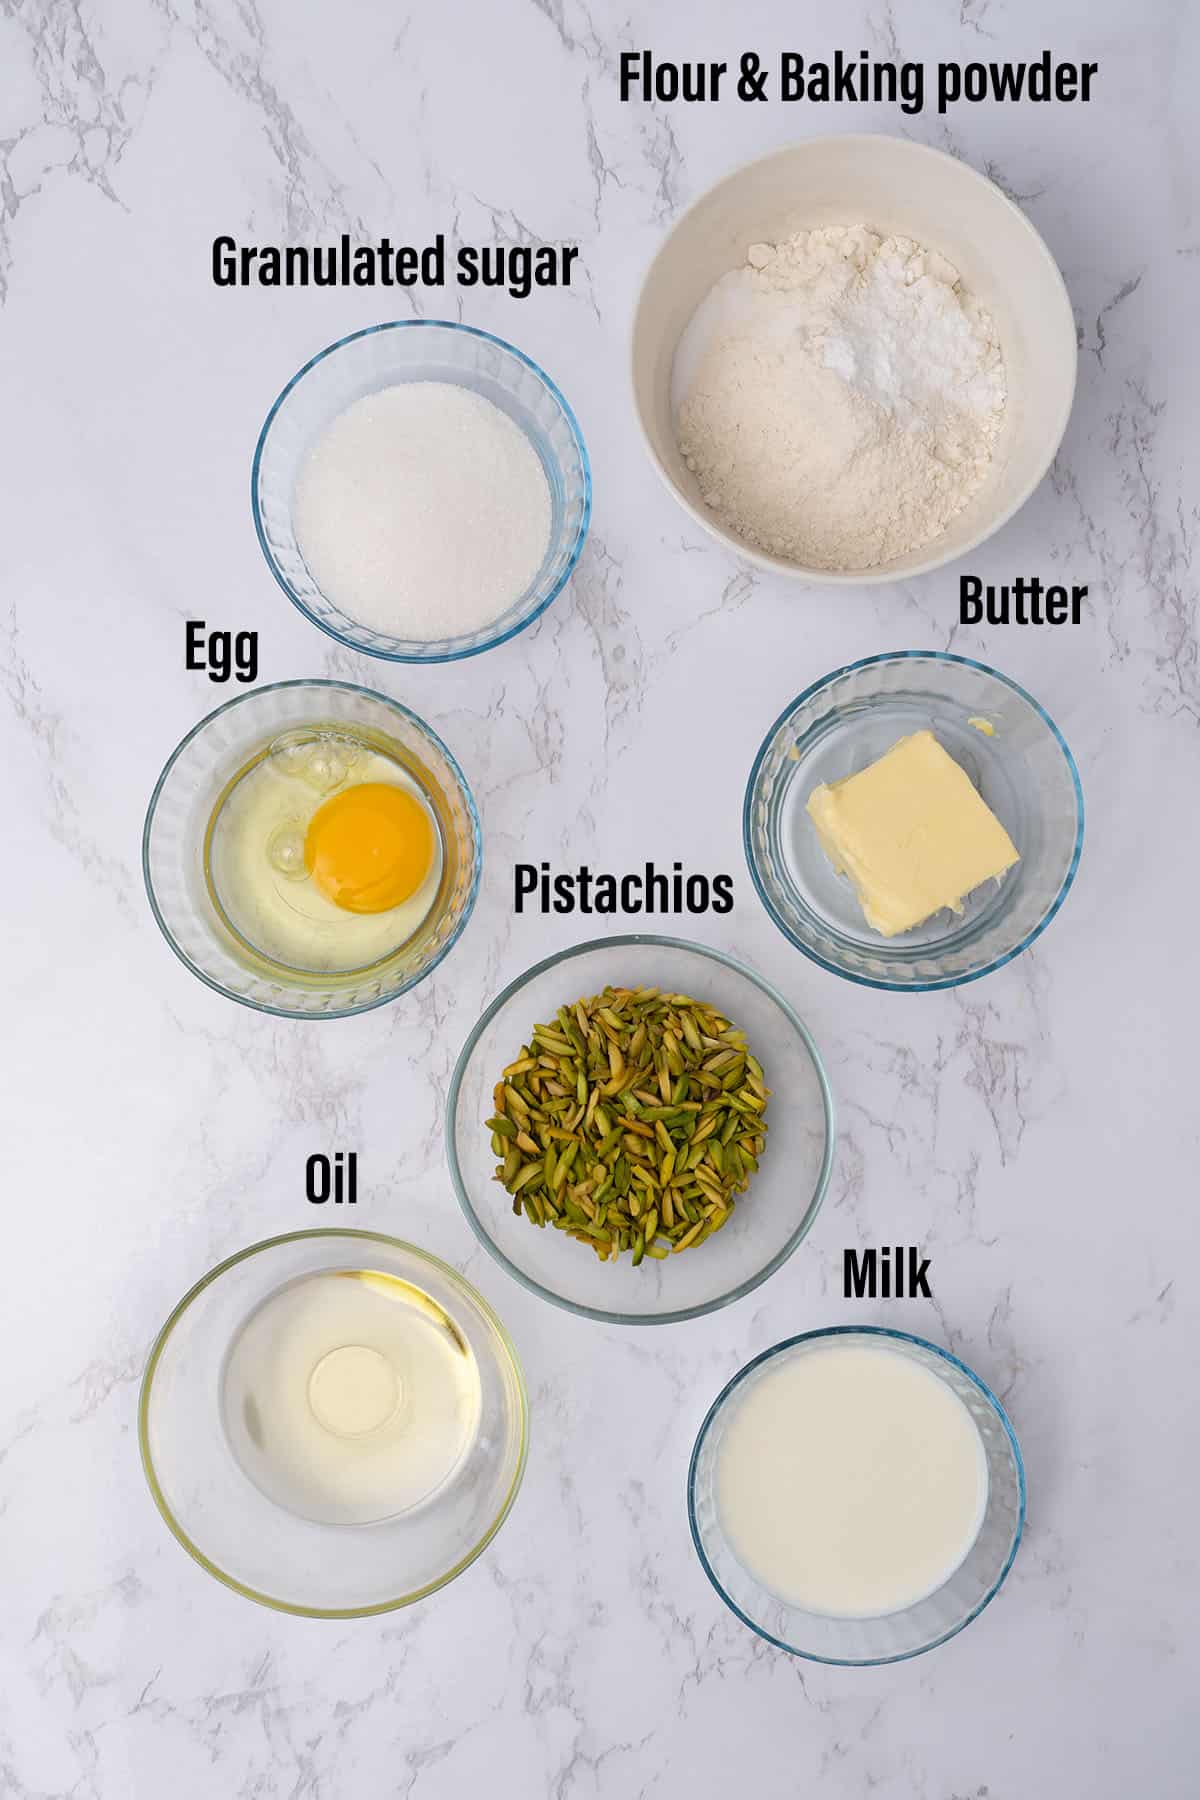 Pistachio muffin ingredients.